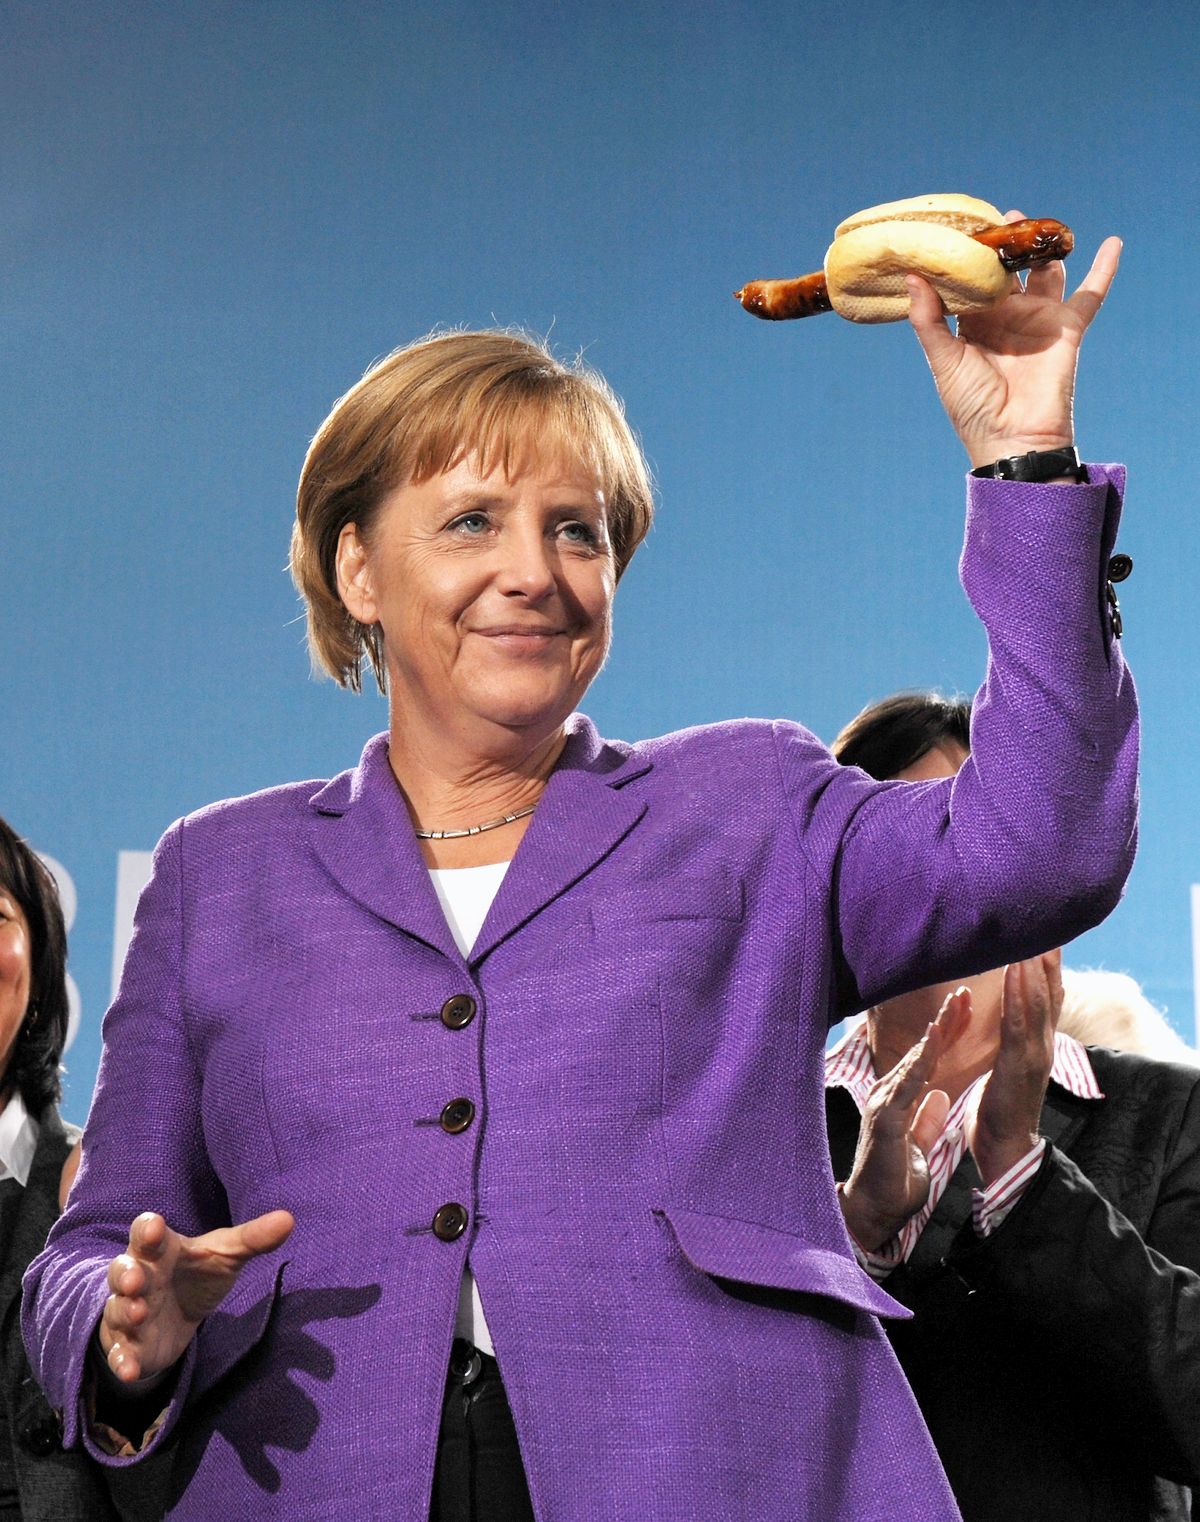 Канцлер Германии Ангела Меркель держит настоящую тюрингскую колбасу на гриле